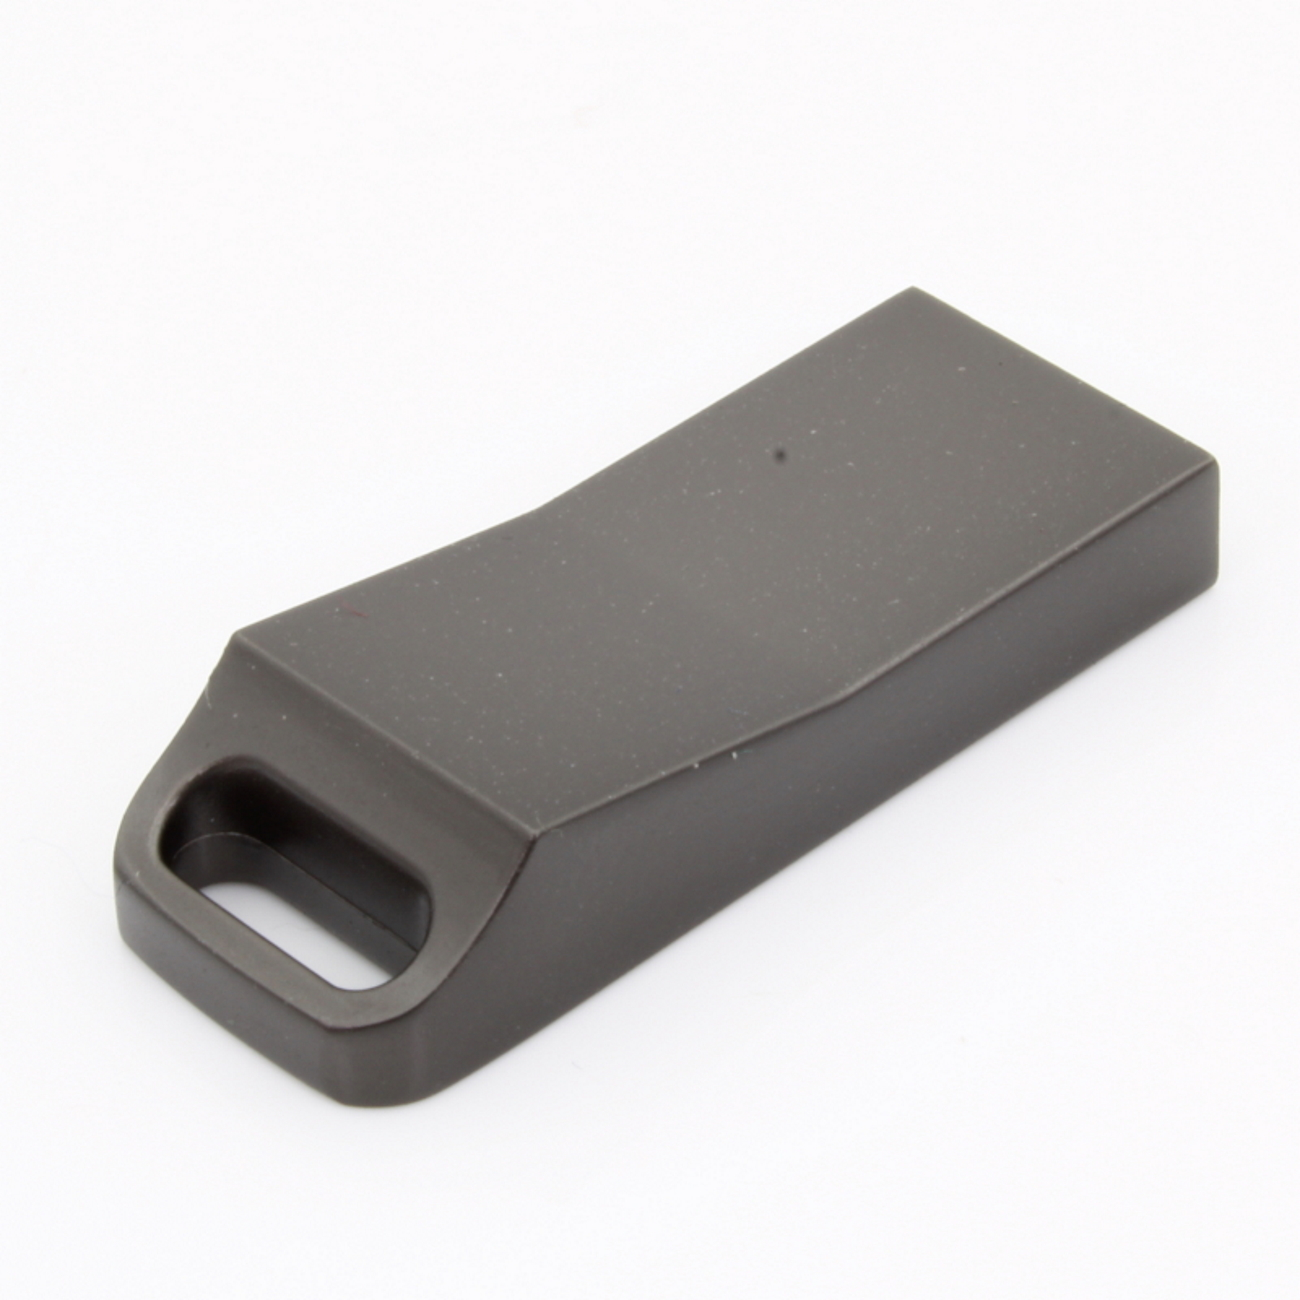 USB-Stick ME15 1 GERMANY USB GB) (Graumetalic, ®Metall